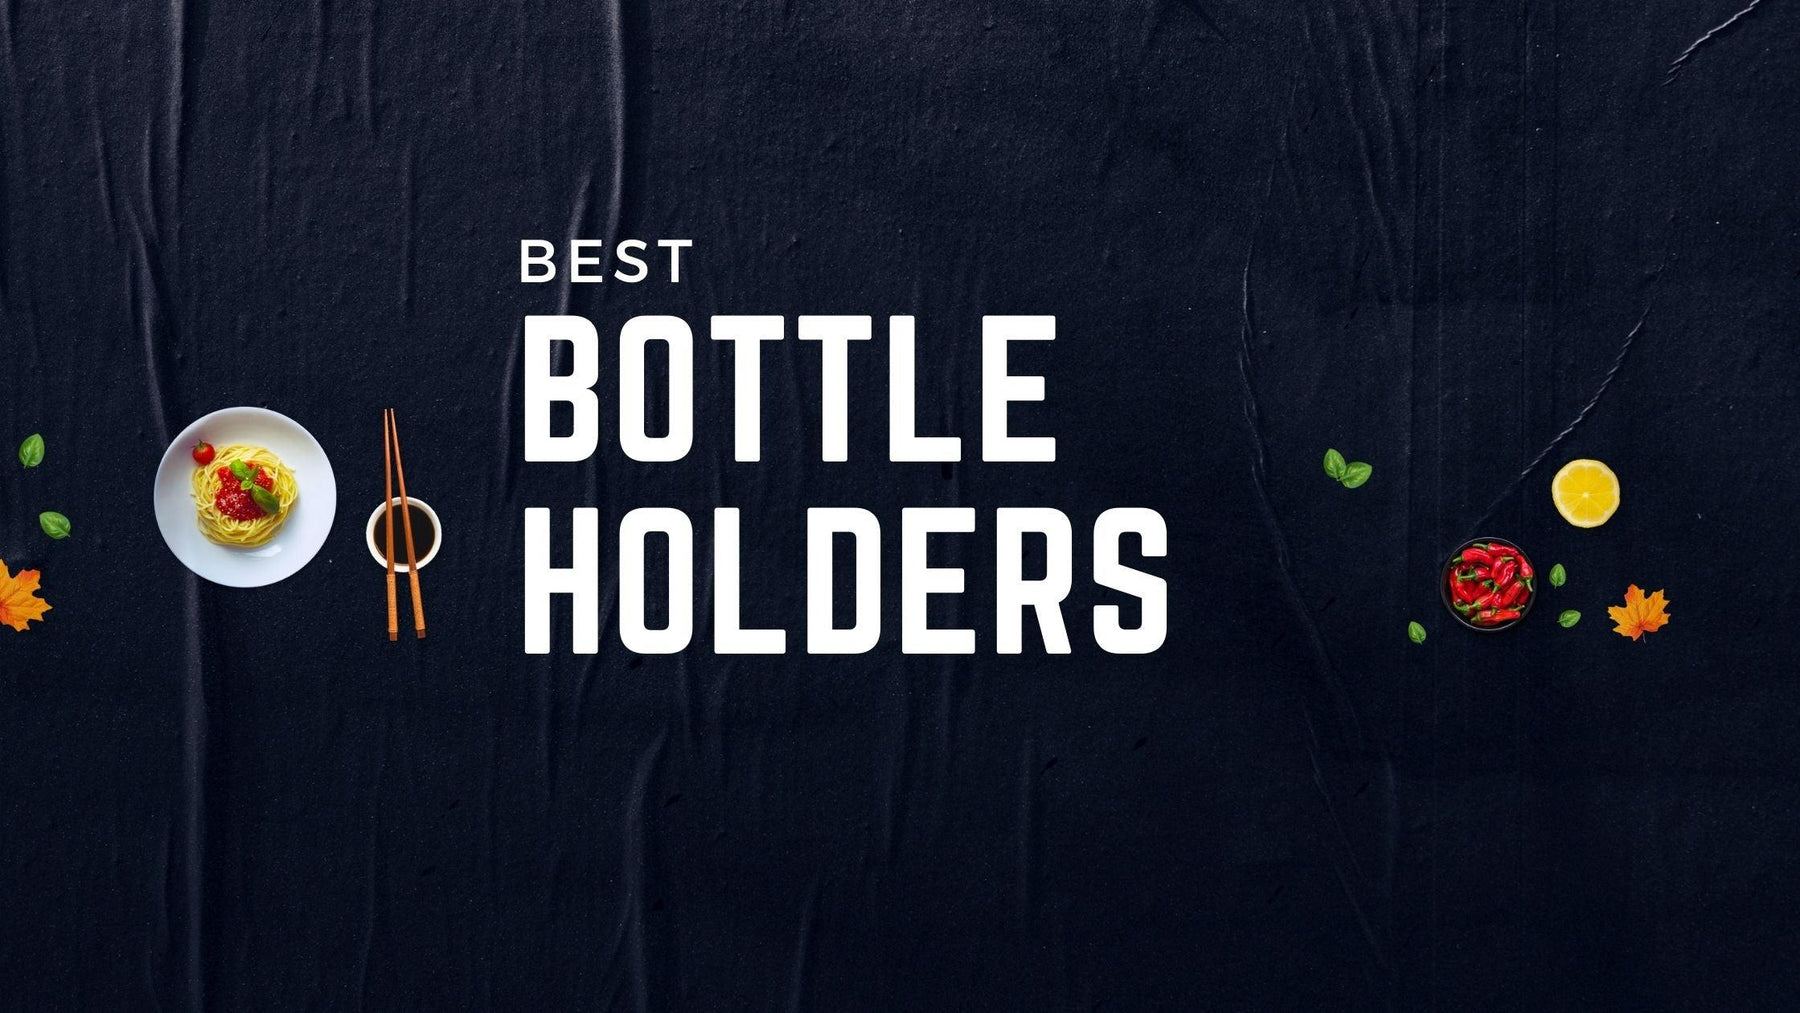 Eccentric Wooden Bottle Holders - WoodenTwist